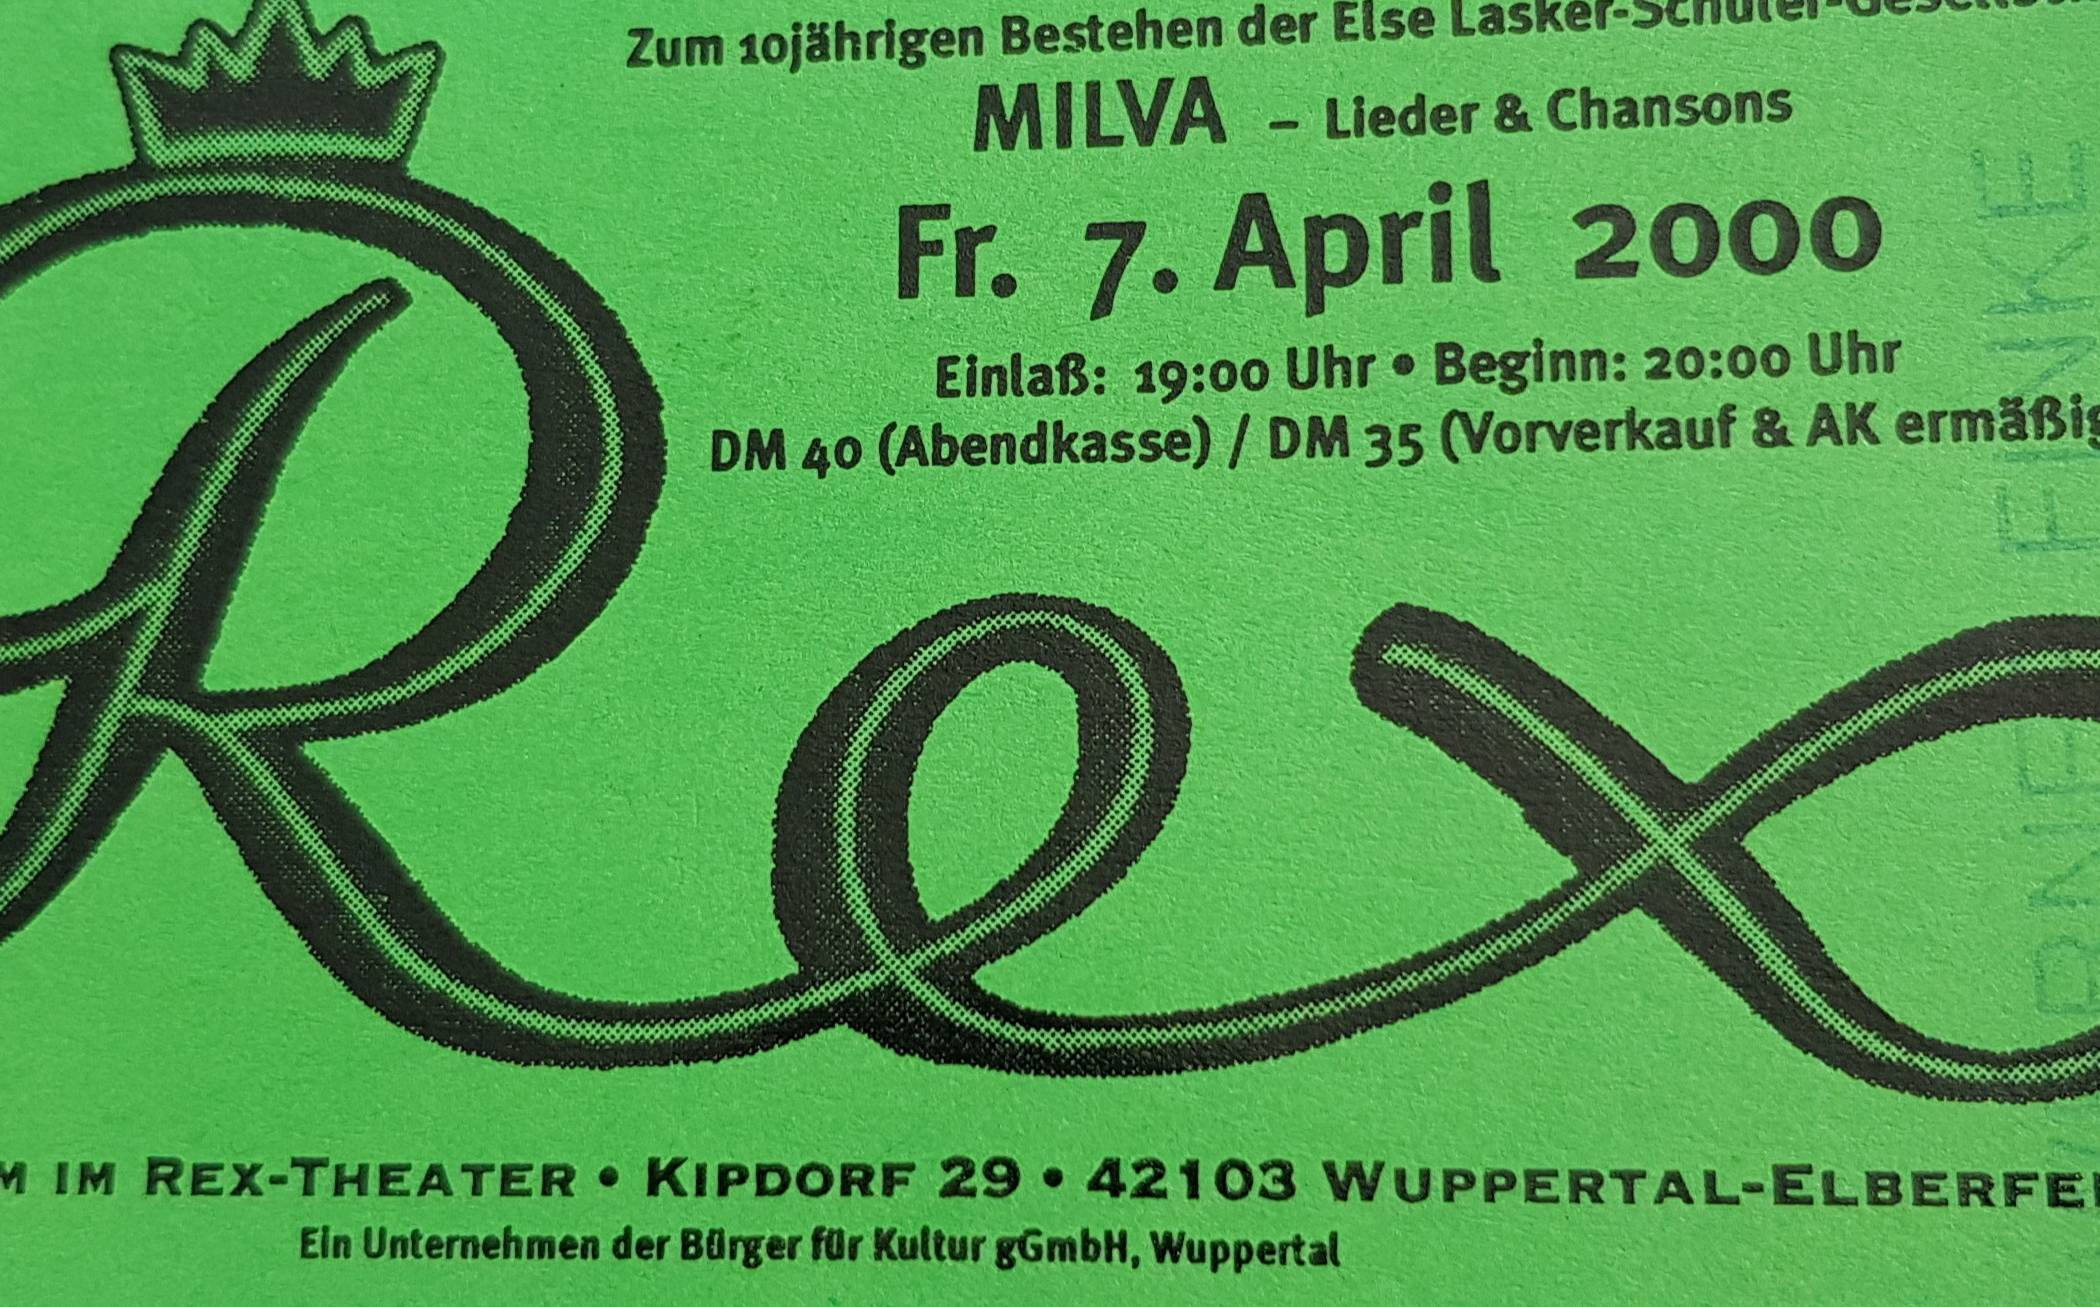  Vor 21 Jahren trat Milva im Rex-Theater auf. 